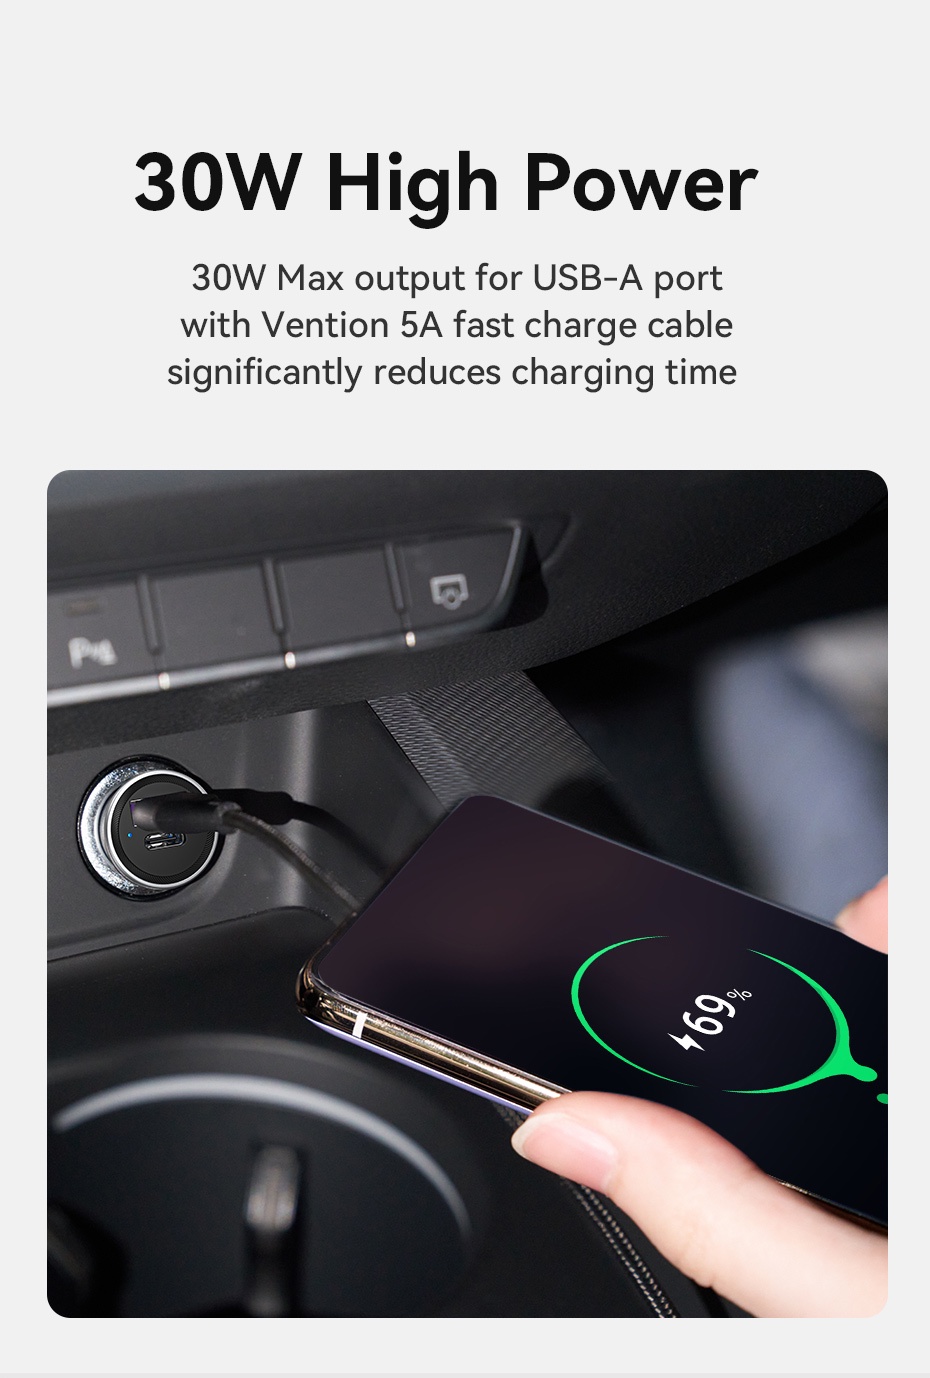 รูปภาพเพิ่มเติมเกี่ยวกับ Vention ที่ชาร์จในรถ 20W/30W ชาร์จเร็ว usb car charger อินเทอร์เฟซ USB A+Type C ที่ชาร์จในรถแบบพกพาขนาดเล็ก ใช้ในรถยนต์